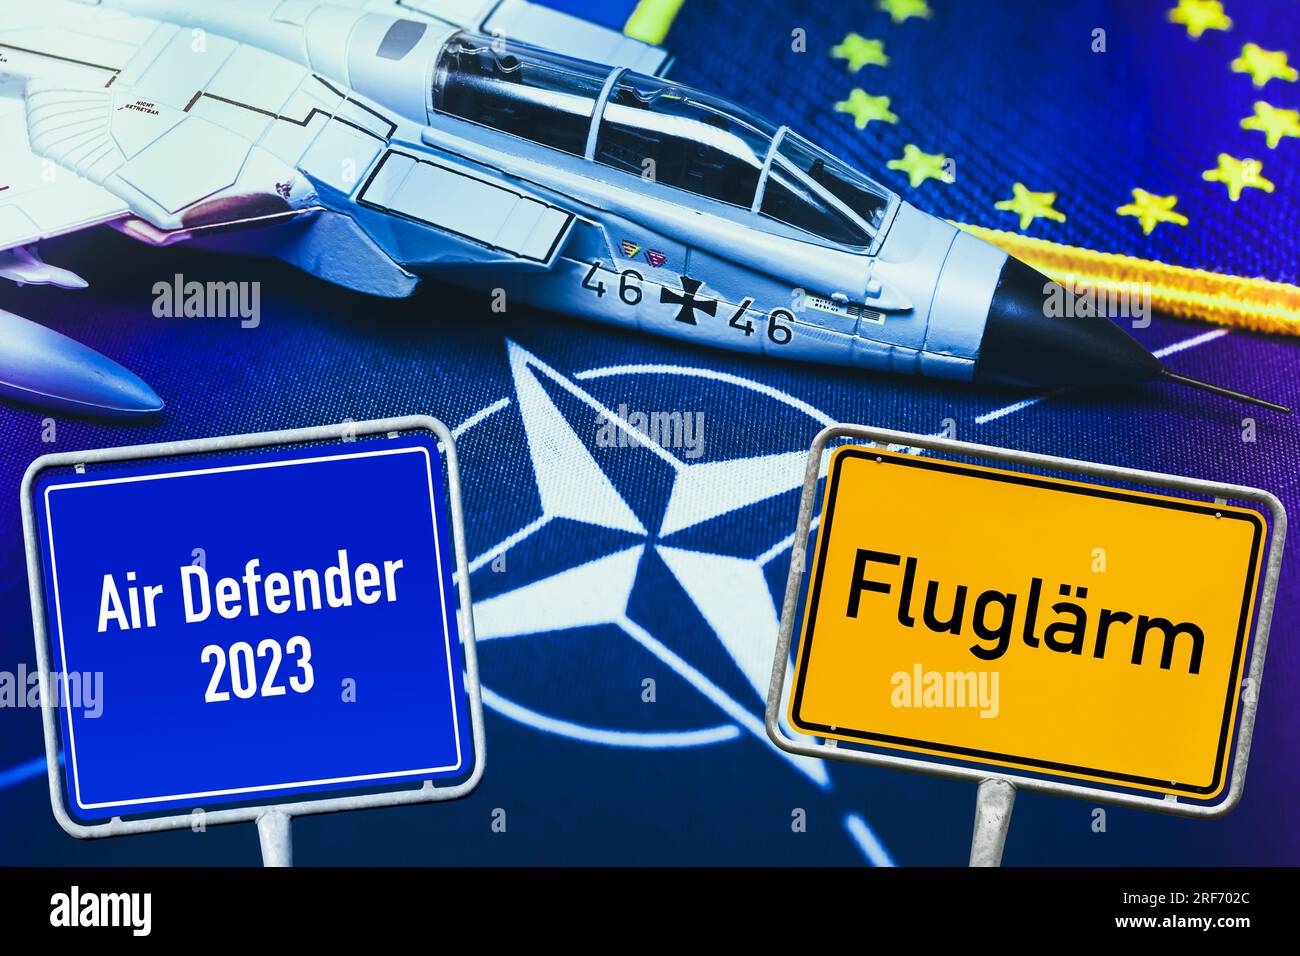 FOTOMONTAGE, Militärjetmodell auf NATO-Fahne und Schilder mit Aufschrift Fluglärm und Air Defender 2023, Symbolfoto NATO-Luftmanöver Foto Stock